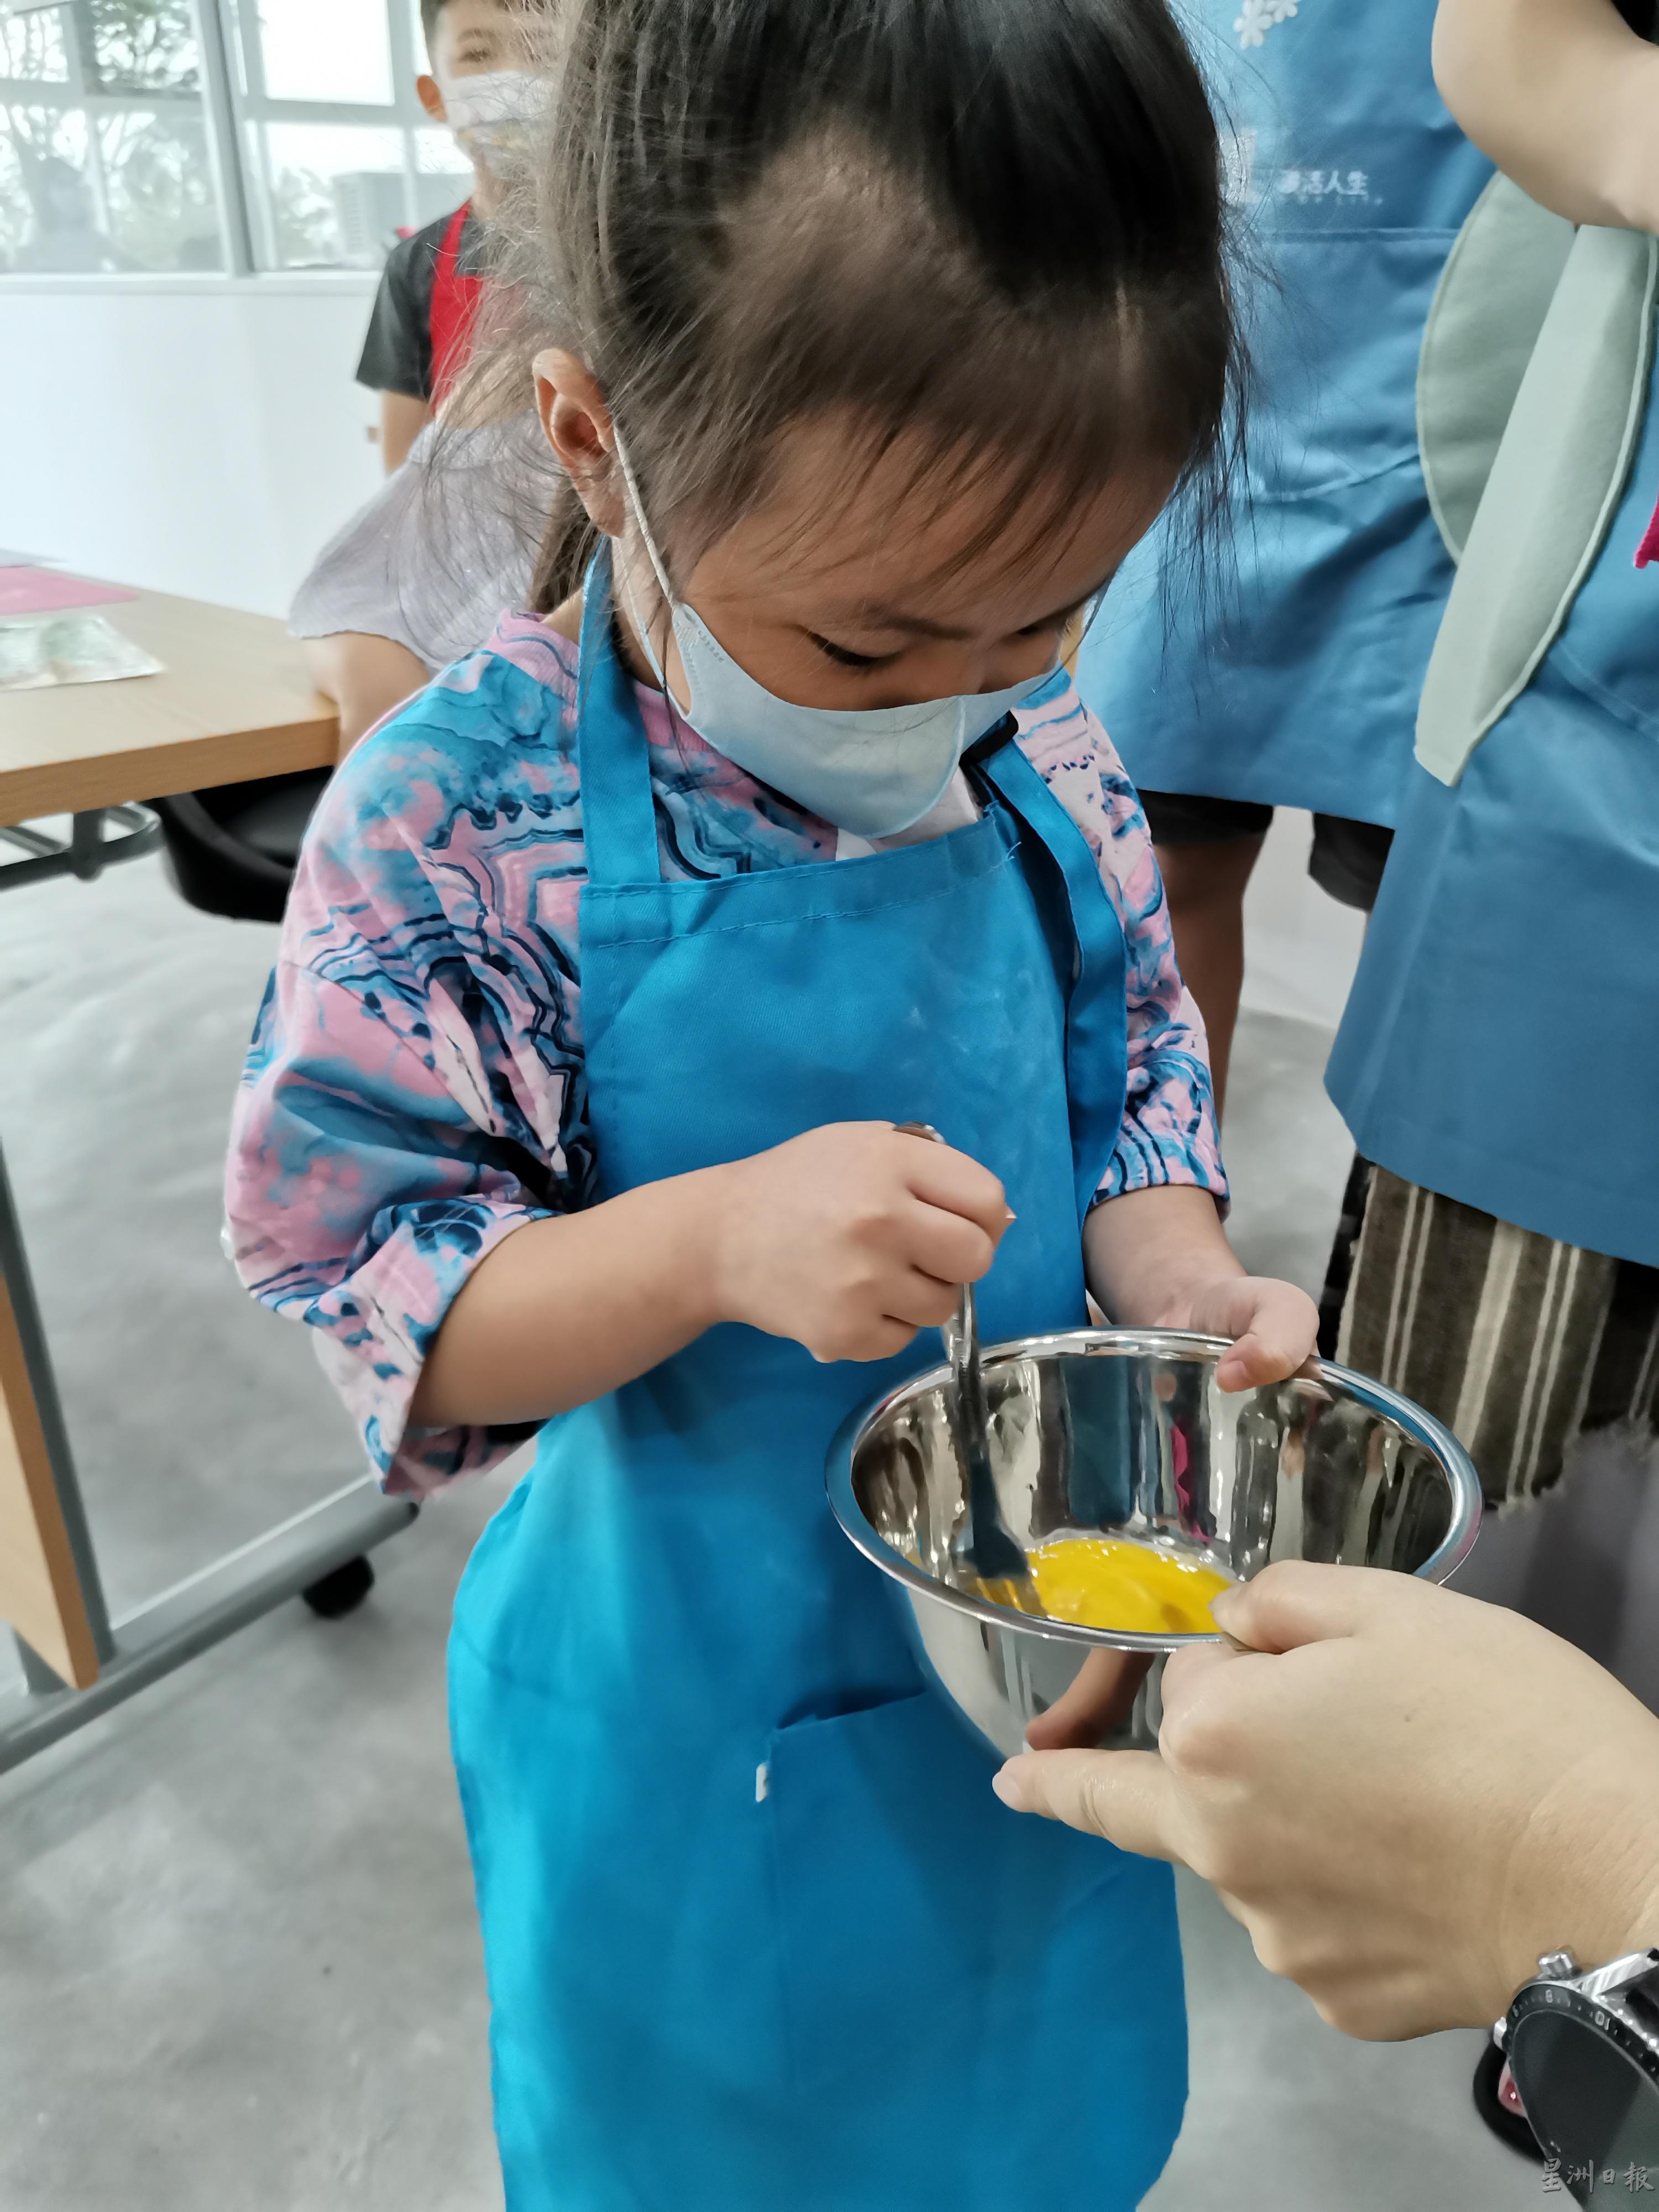 参加儿童烘焙班的小孩，也能制出美味的甜品。

